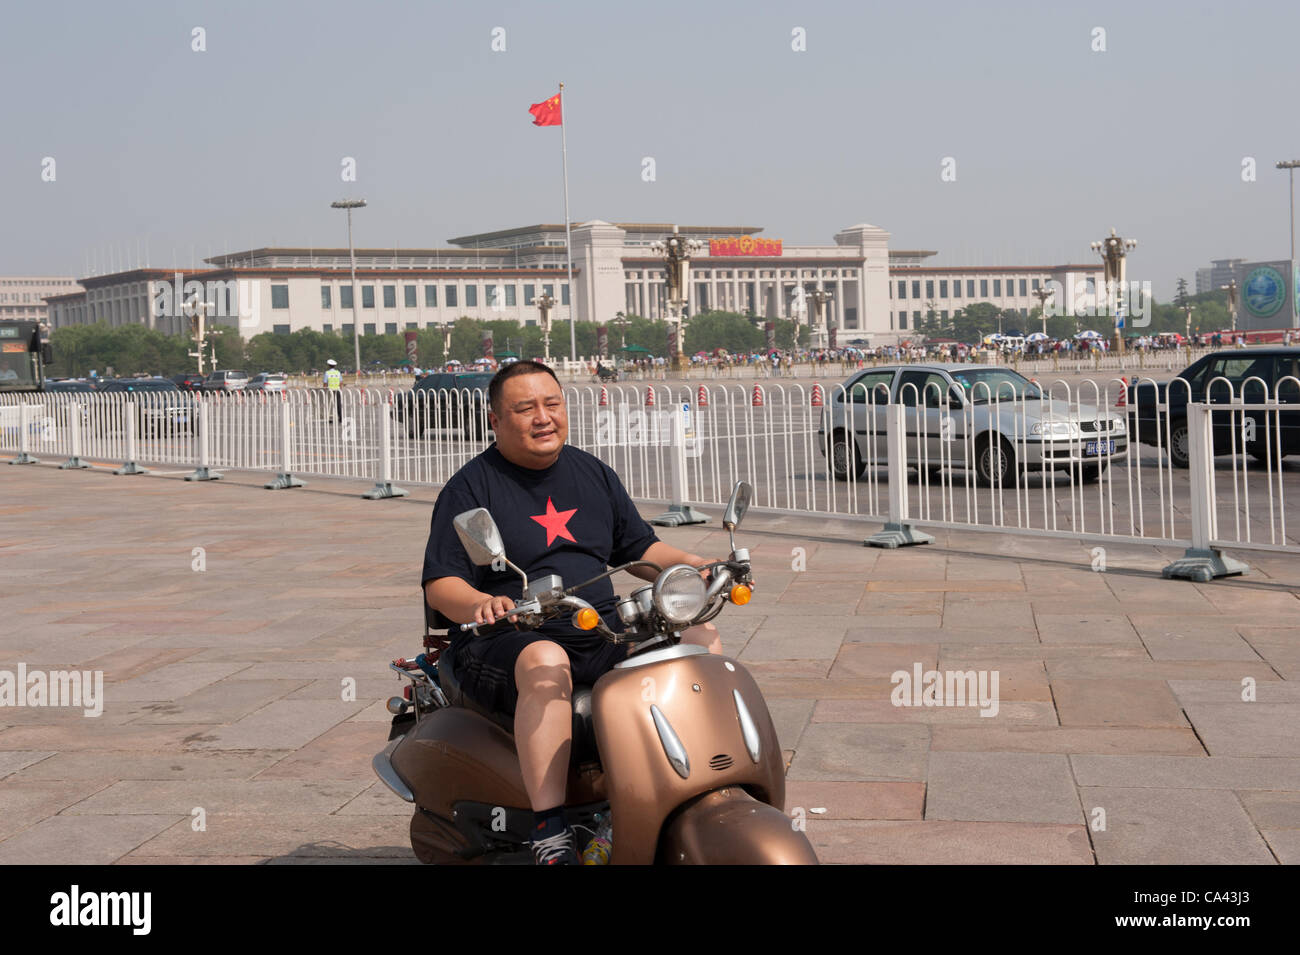 Homme conduisant sur un scooter à la place Tiananmen, Beijing, Chine le lundi 4 juin 2012. 4 juin 2012 marque le 23e anniversaire de la répression militaire des manifestations des étudiants de la place Tiananmen en 1989. Banque D'Images